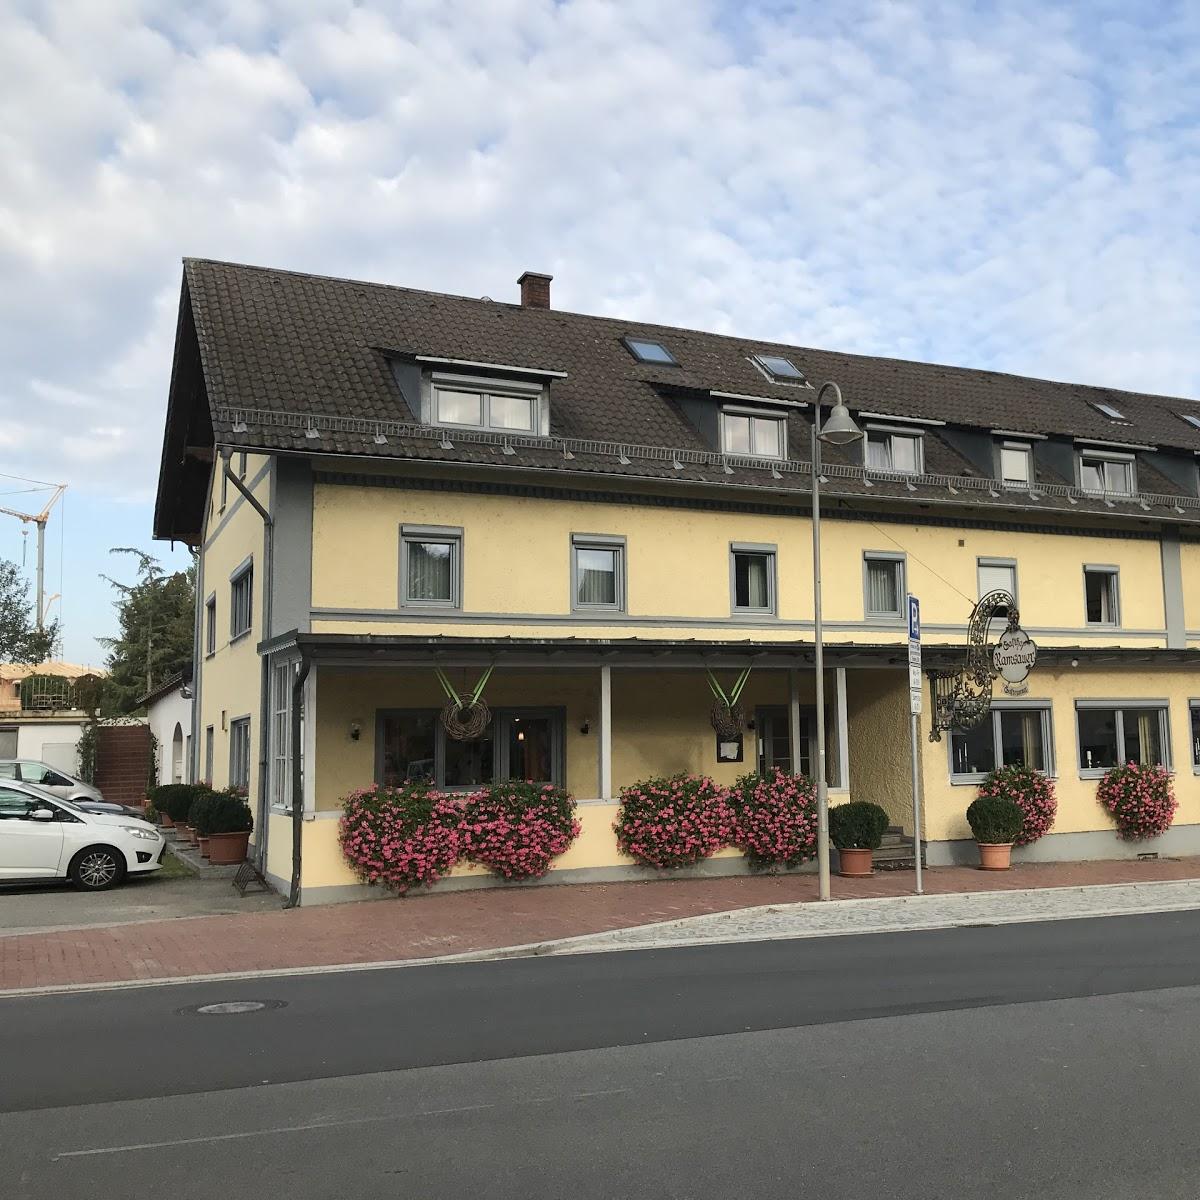 Restaurant "Gasthof Ramsauer" in Neufahrn in Niederbayern